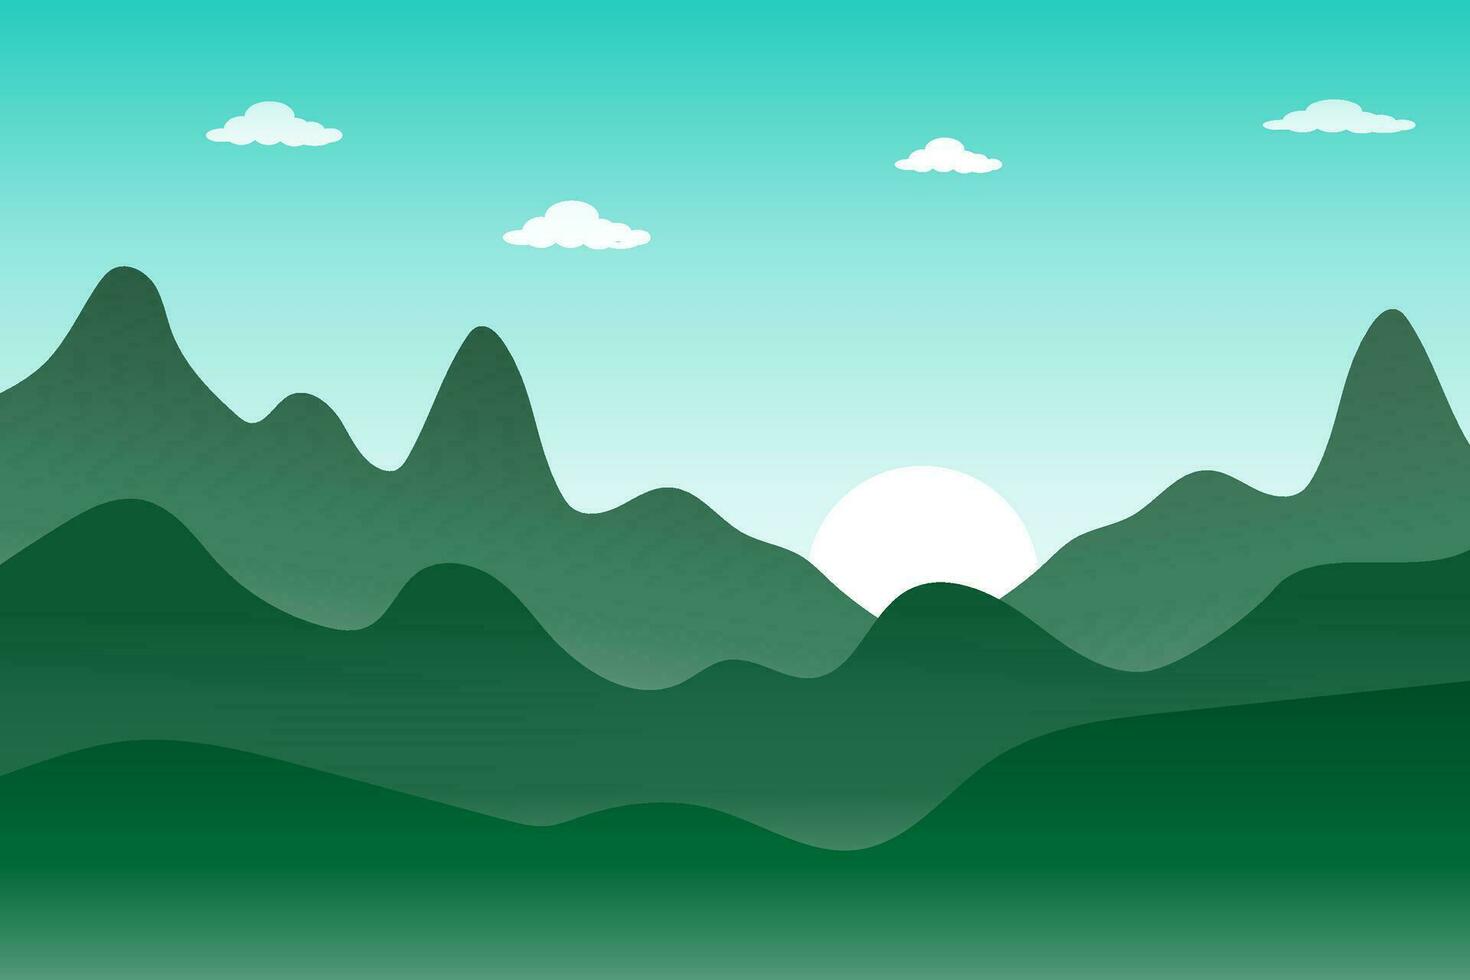 dessin animé vecteur illustration pré et montagne coucher de soleil, ciel bleu avec des nuages avec des collines et des rizières dans le paysage naturel